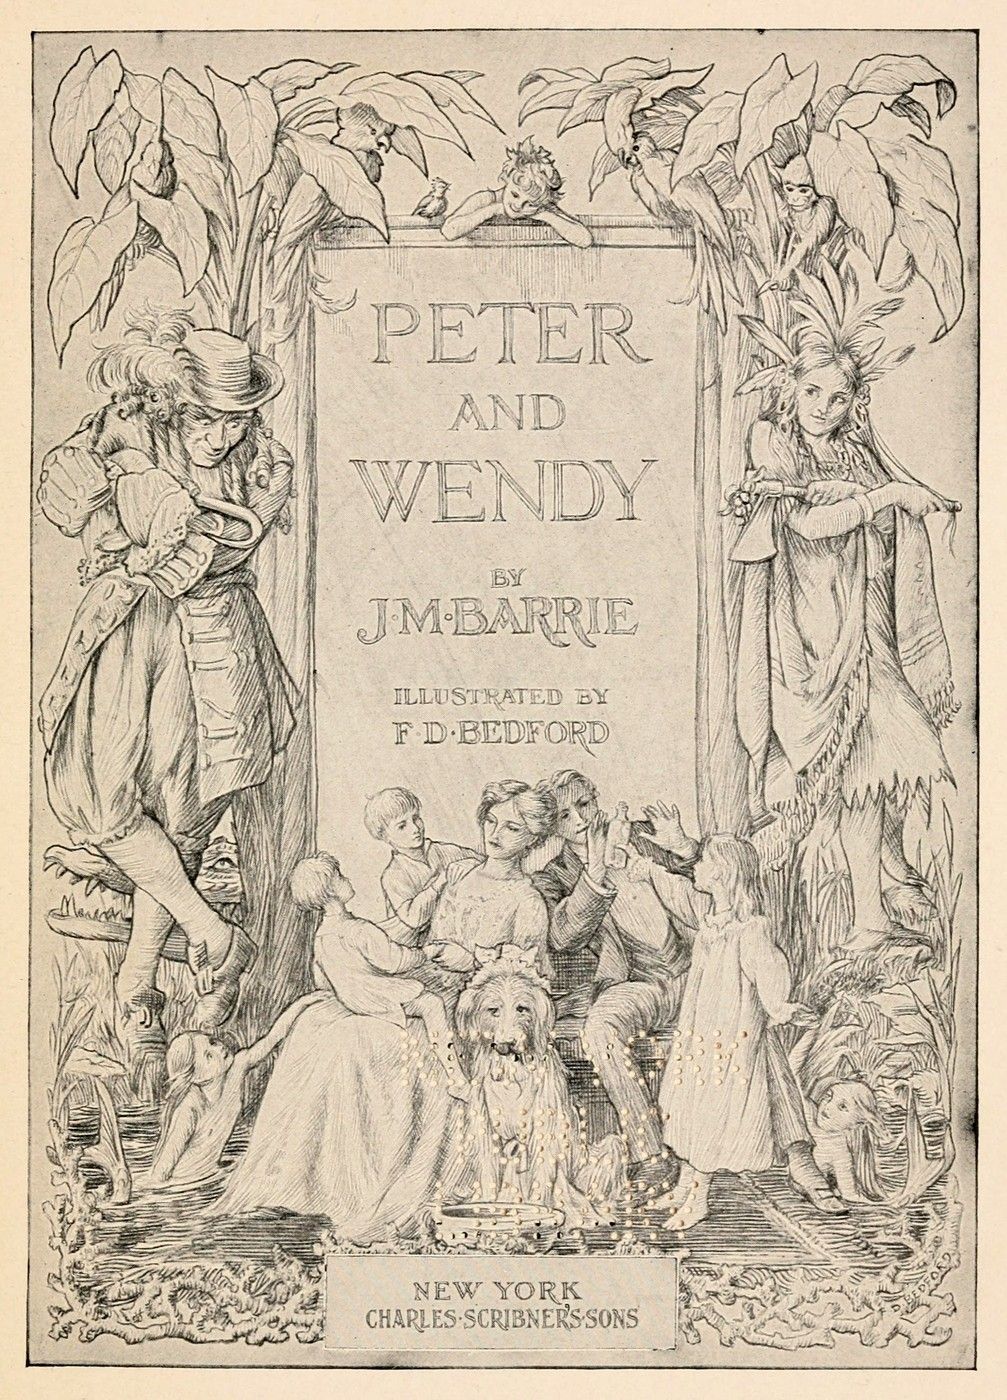 Imagem original do livro "Peter and Wendy"